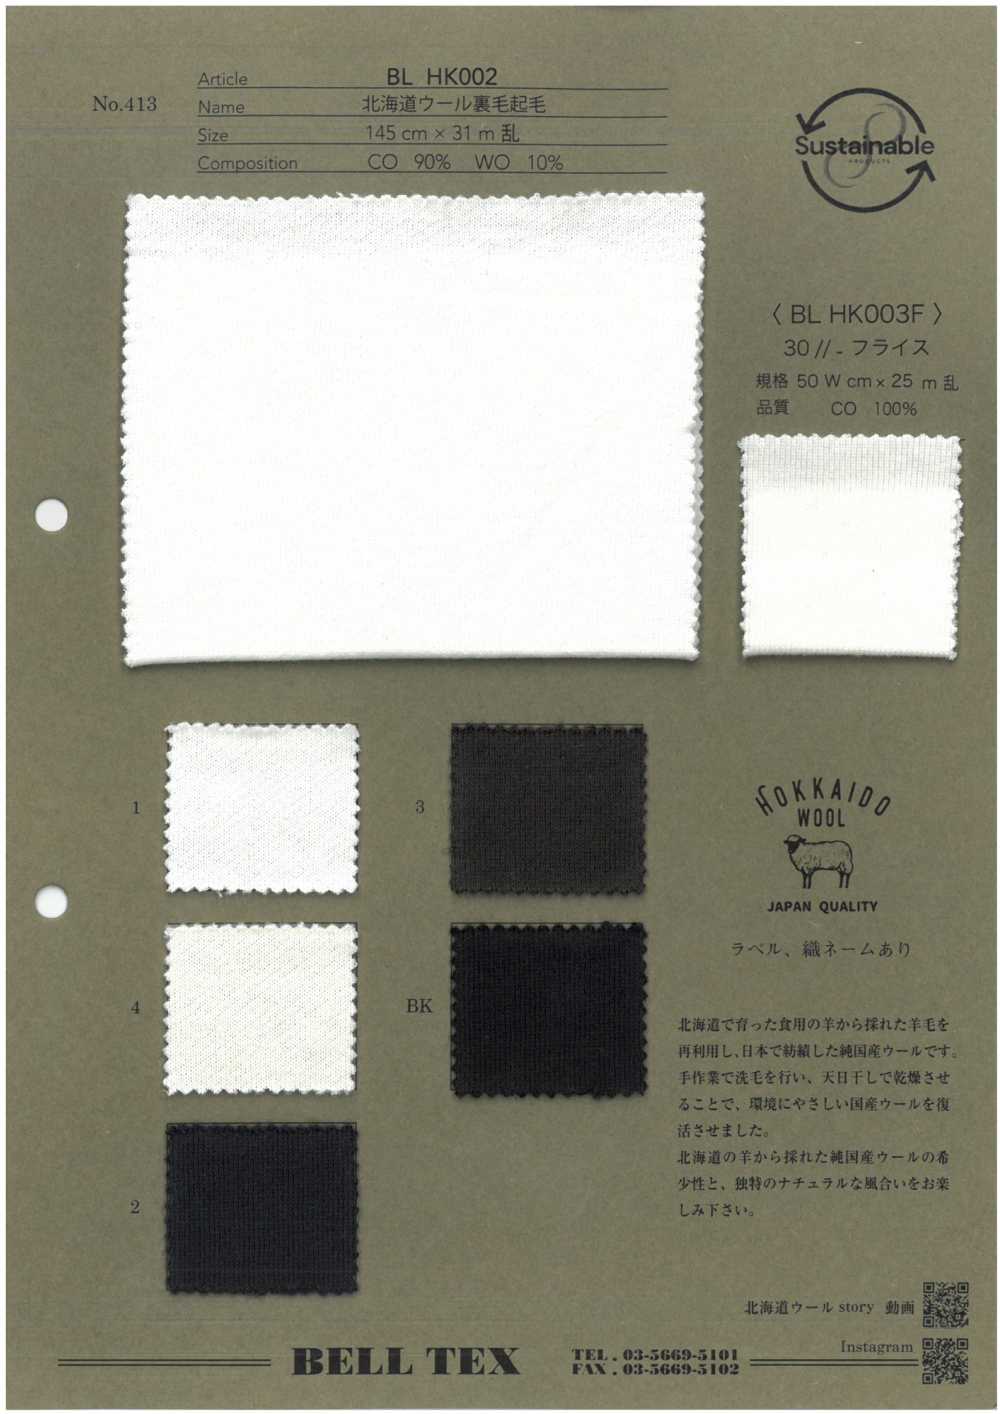 BLHK002 [Textilgewebe] Scheitel